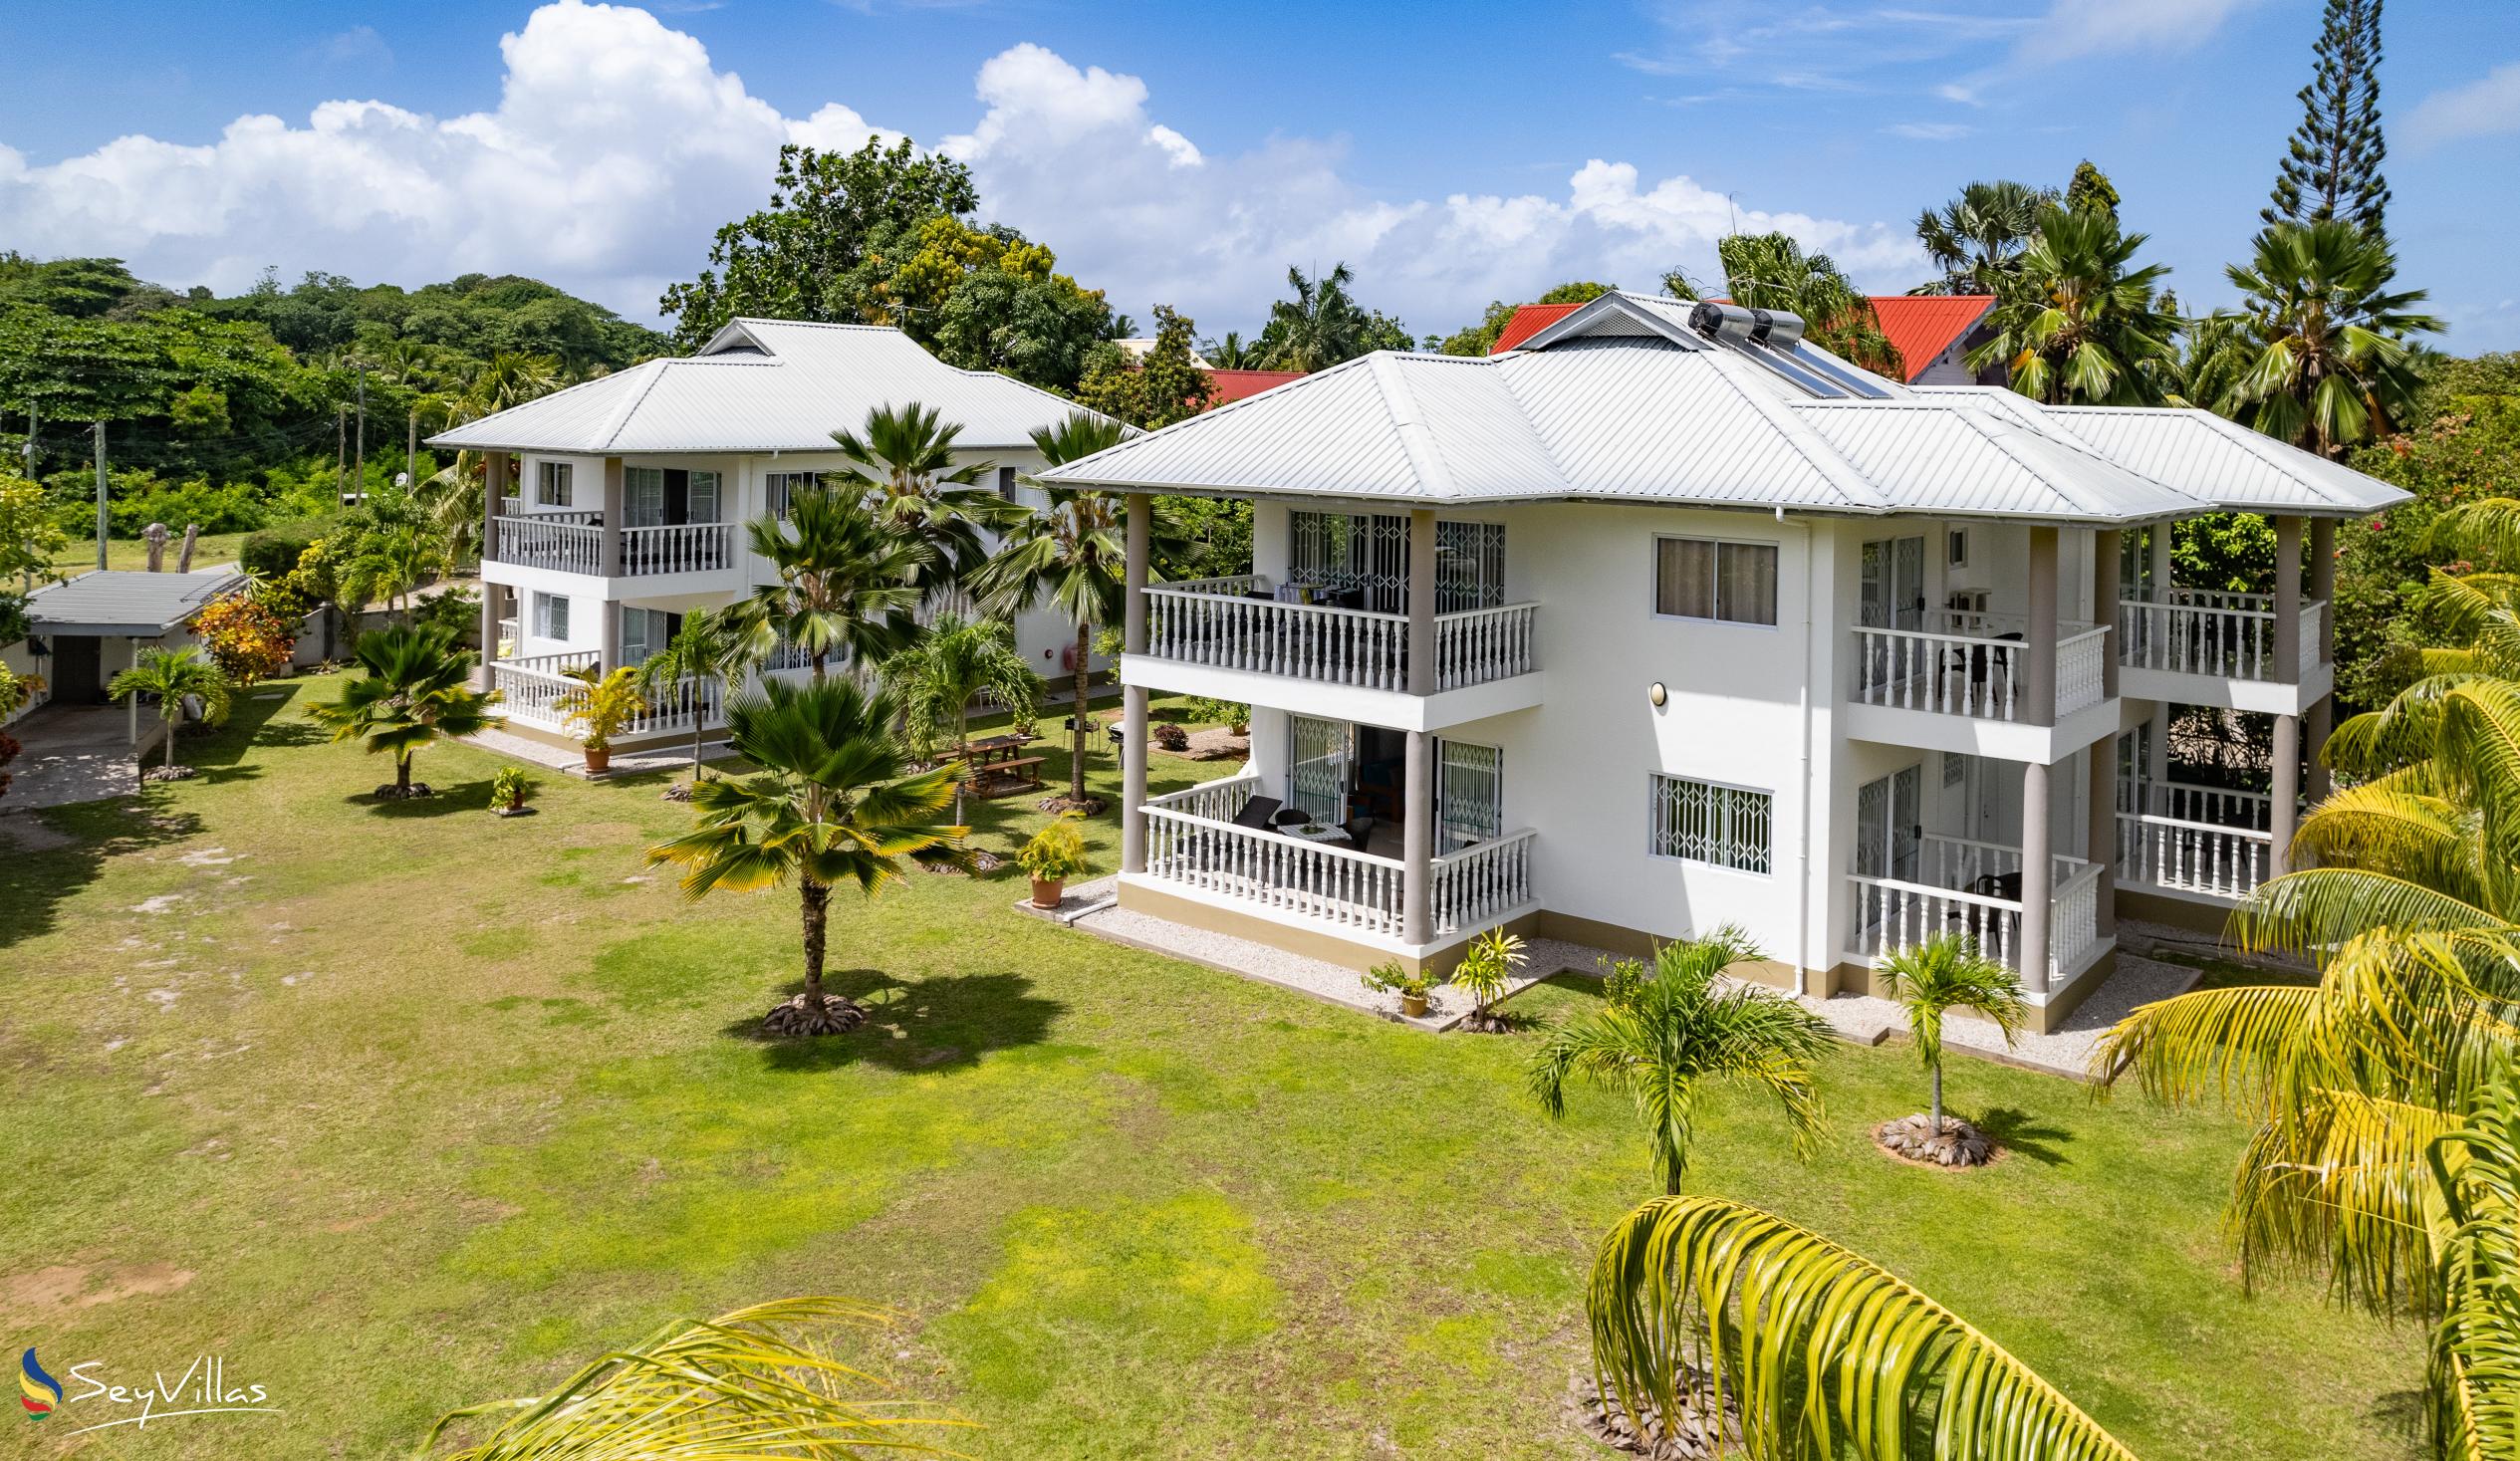 Foto 2: Casa Tara Villas - Aussenbereich - Praslin (Seychellen)